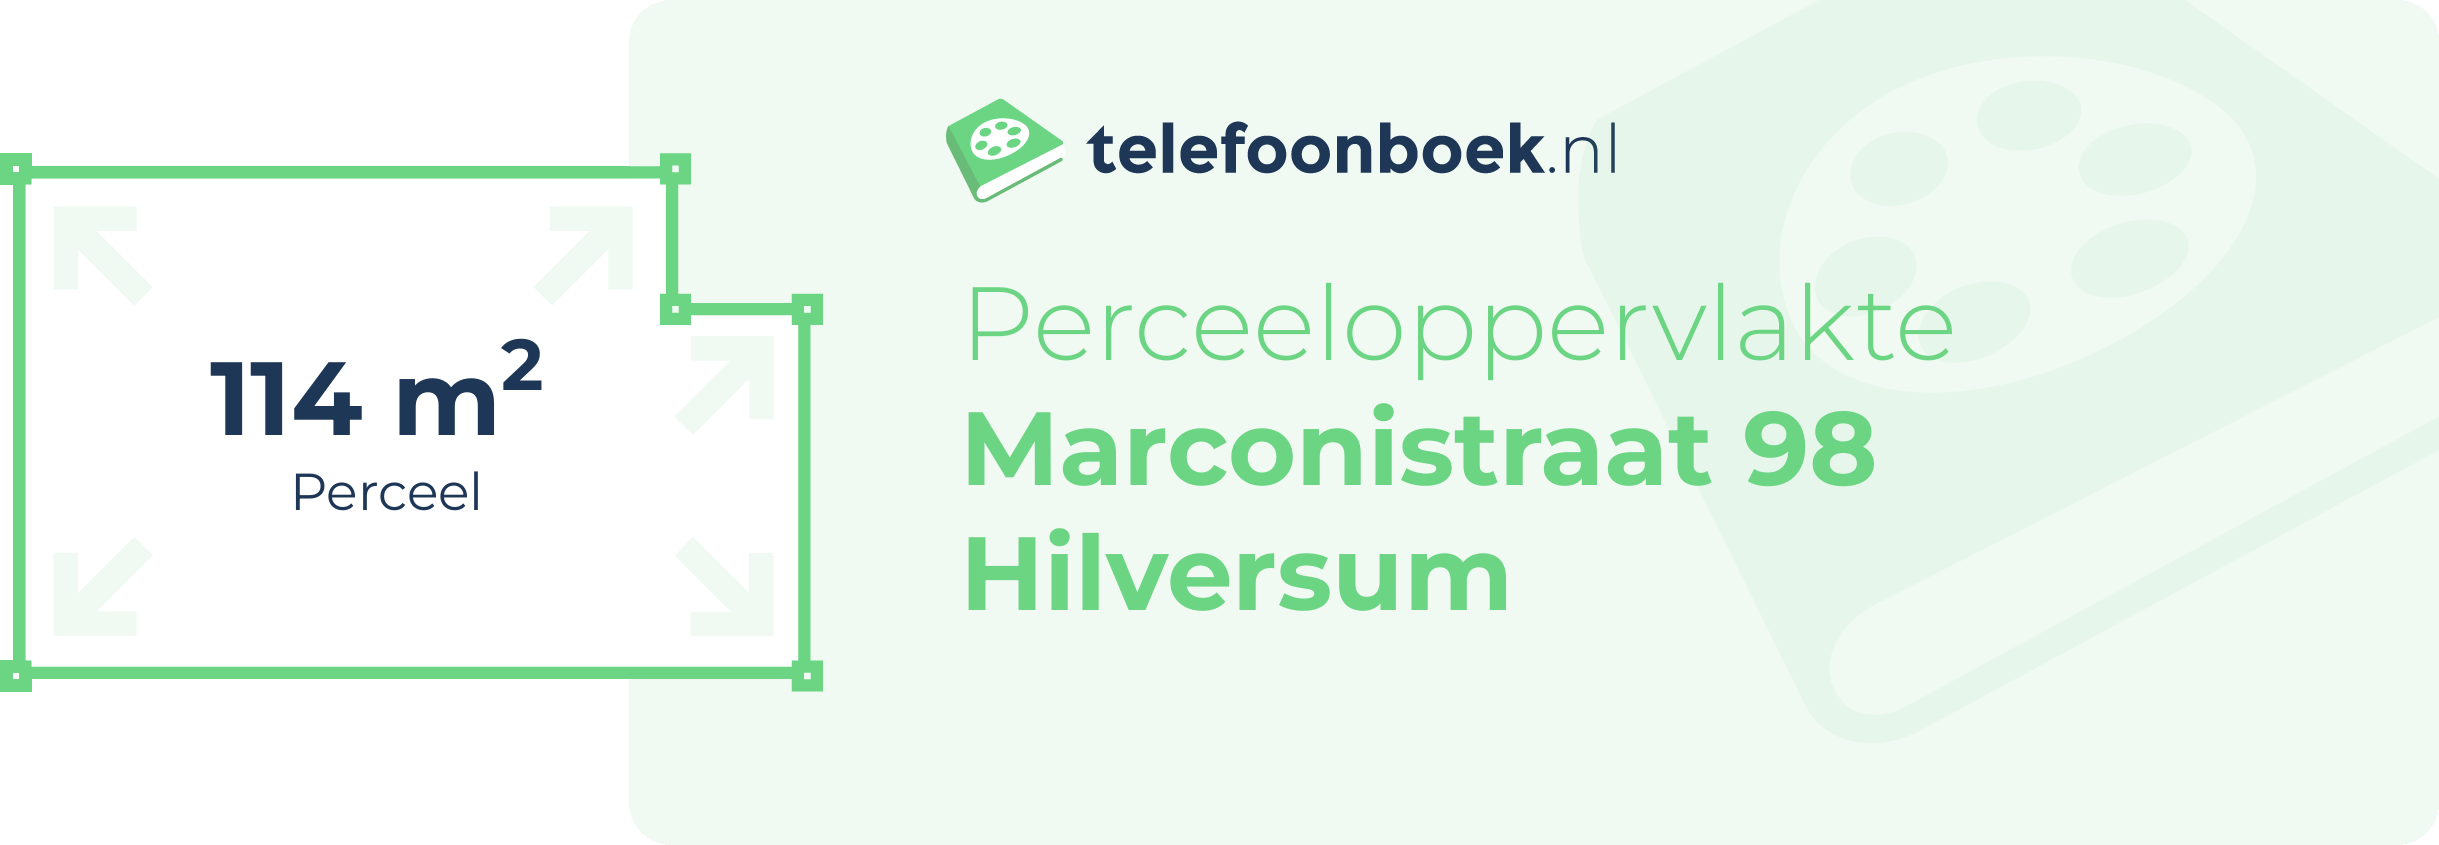 Perceeloppervlakte Marconistraat 98 Hilversum